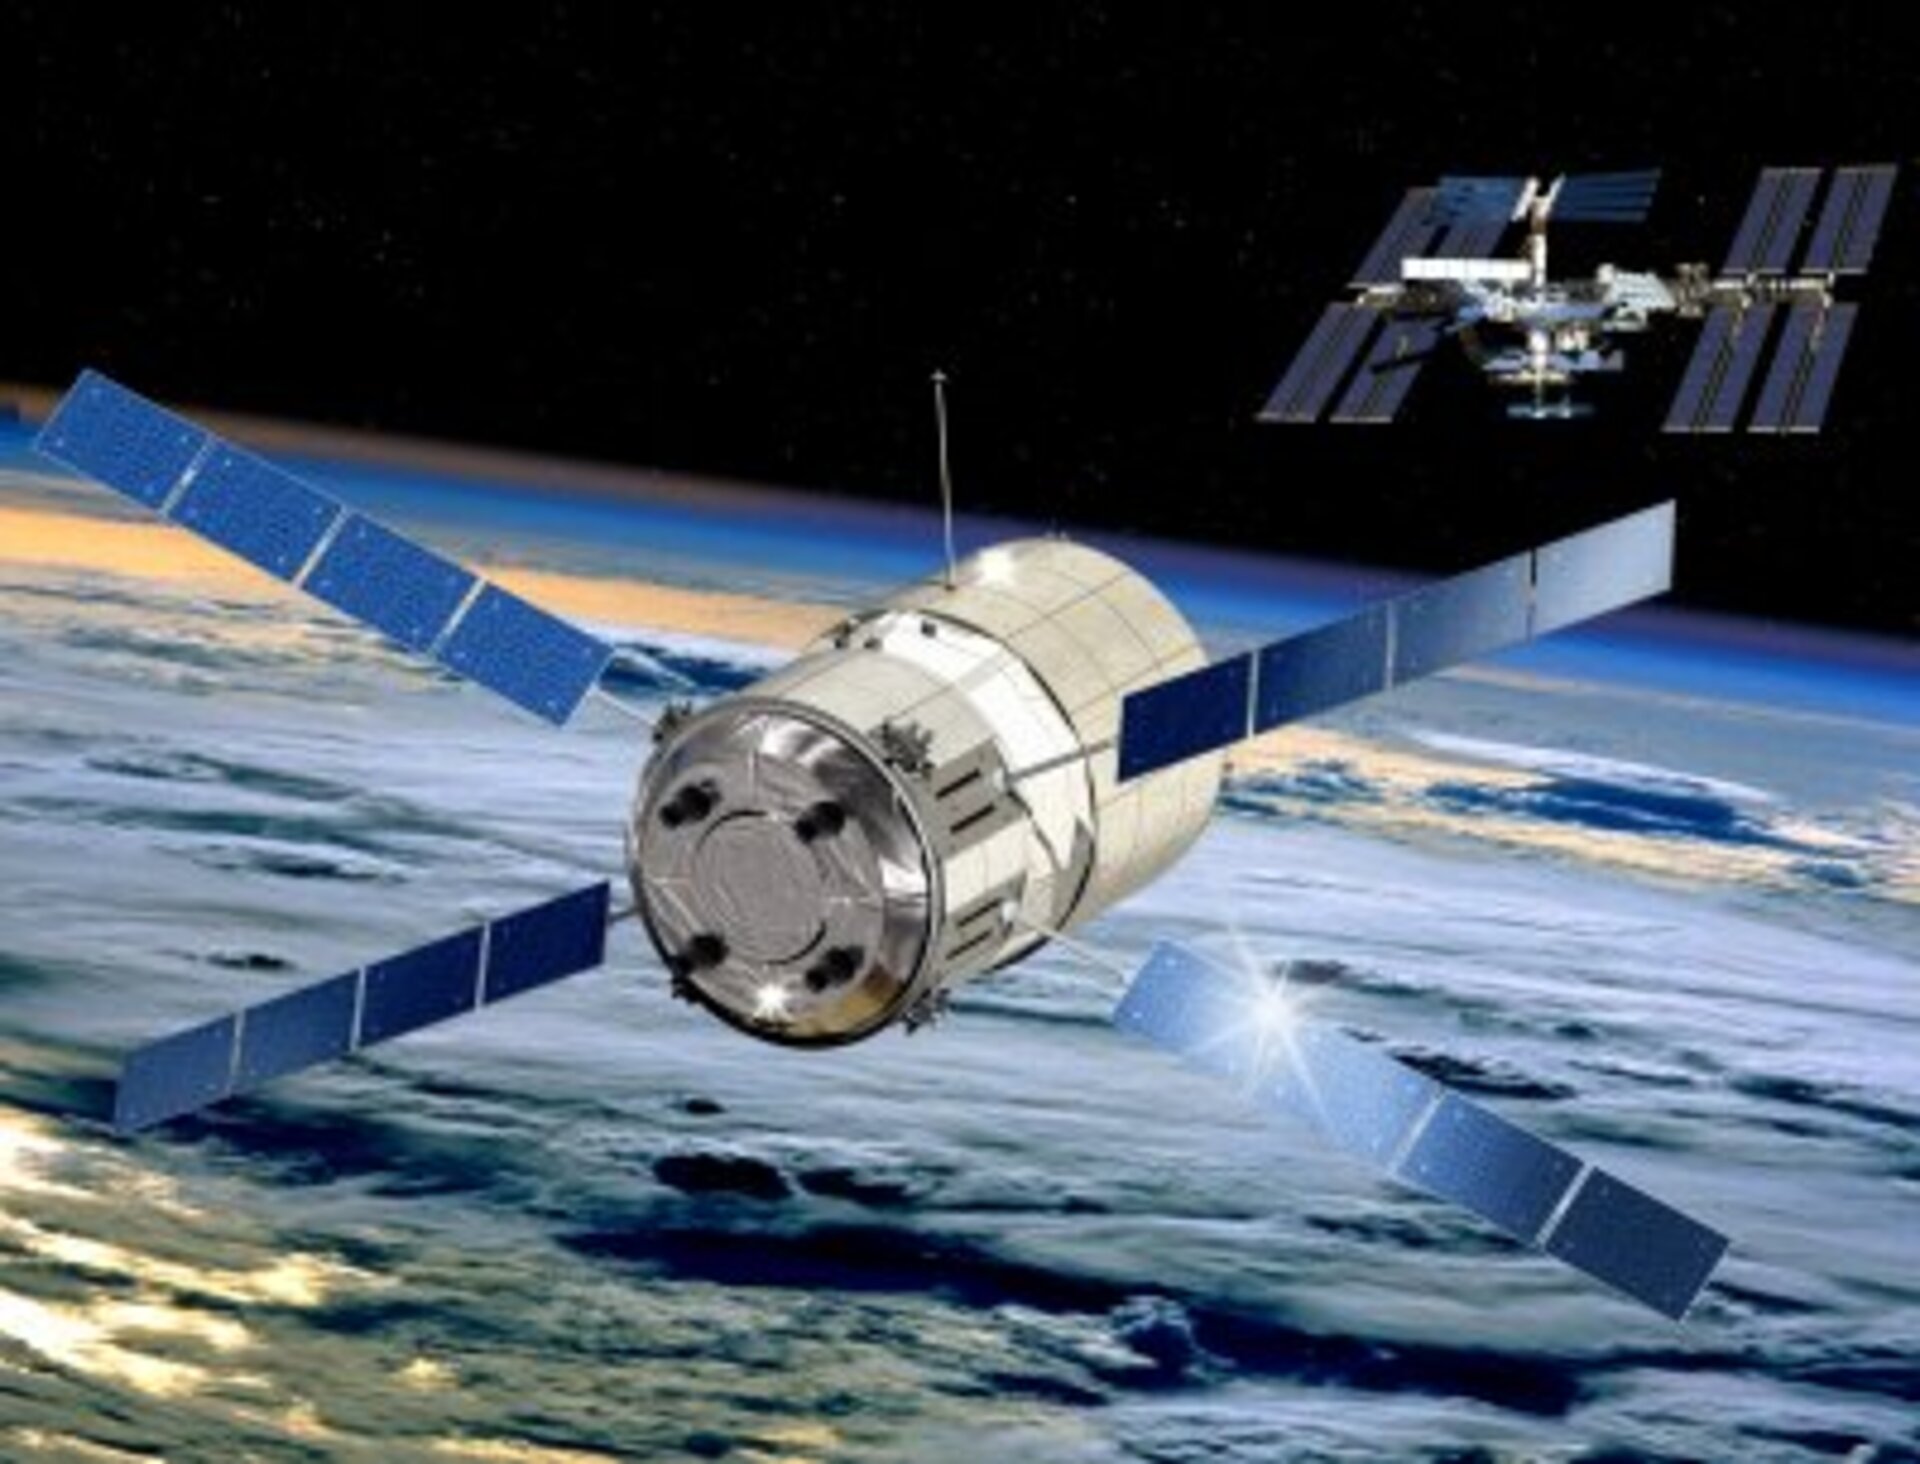 2004: ATV 'Jules Verne' est arrivé à l'ISS